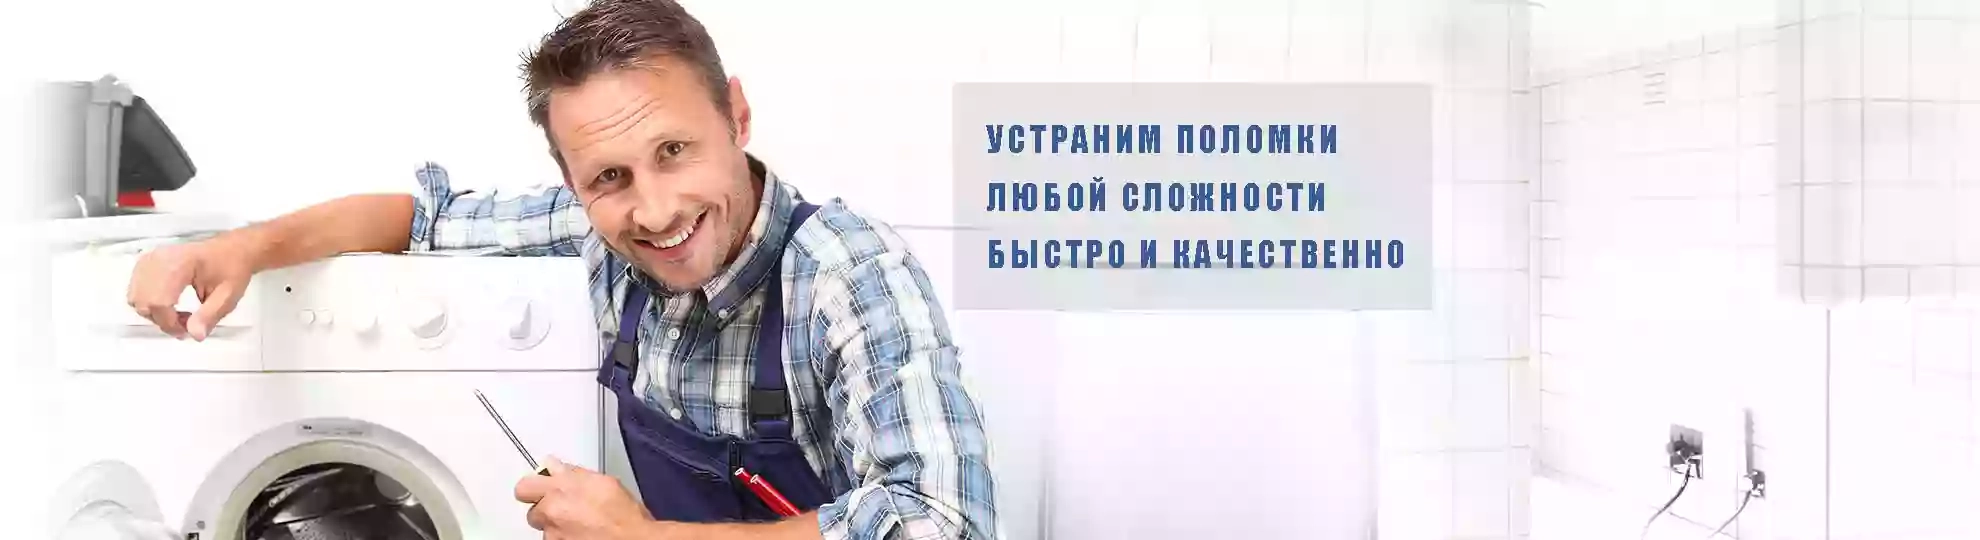 утилизация выкуп стиральных машин холодильников в одессе "РемБытТехника" Одесса